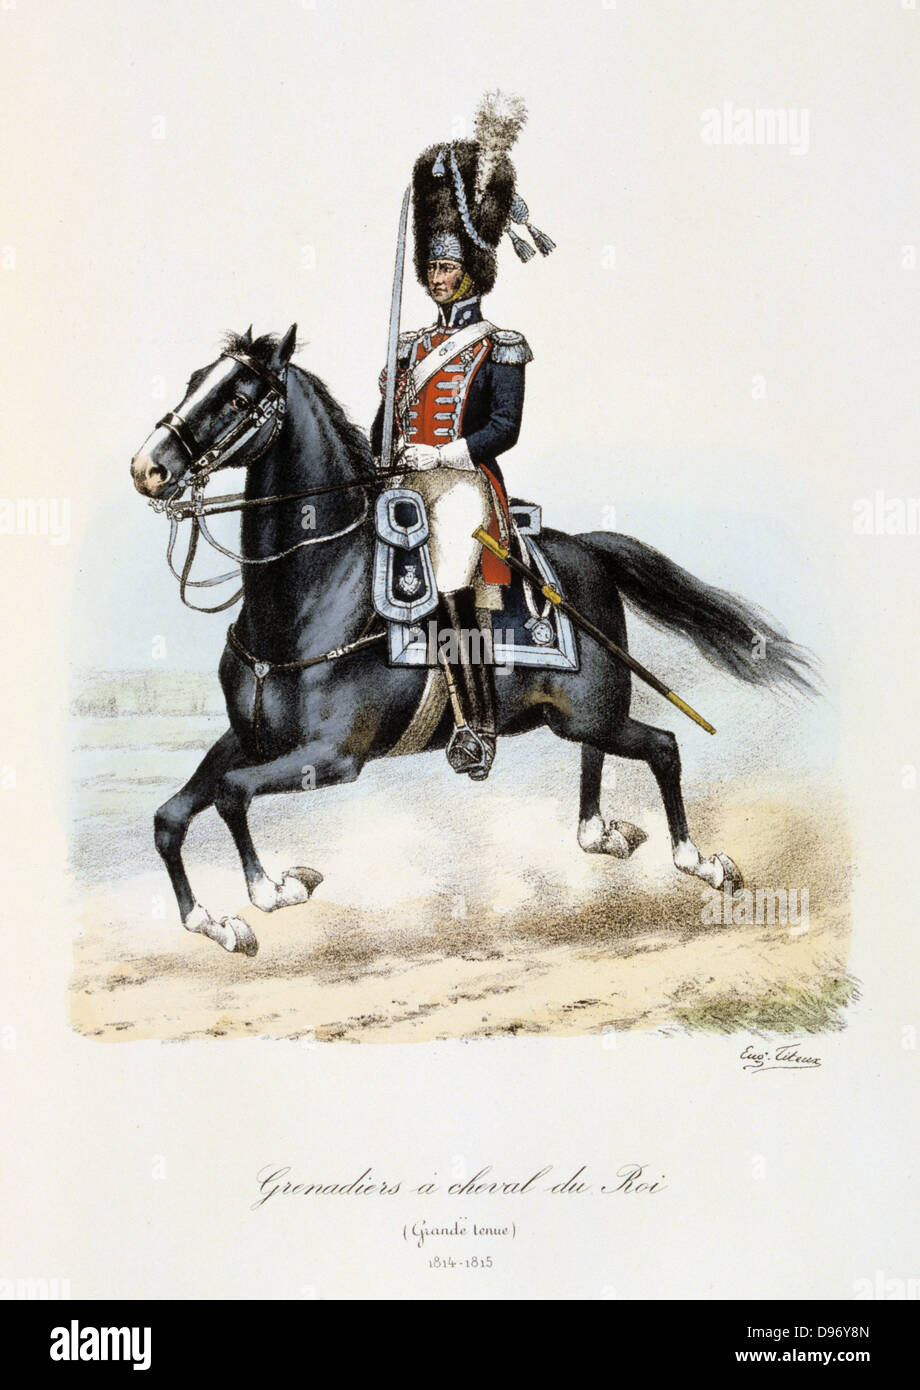 Royal Mounted Black Grenadier, 1814-1815. From 'Histoire de la maison militaire du Roi de 1814 a 1830' by Eugene Titeux, Paris, 1890. Stock Photo